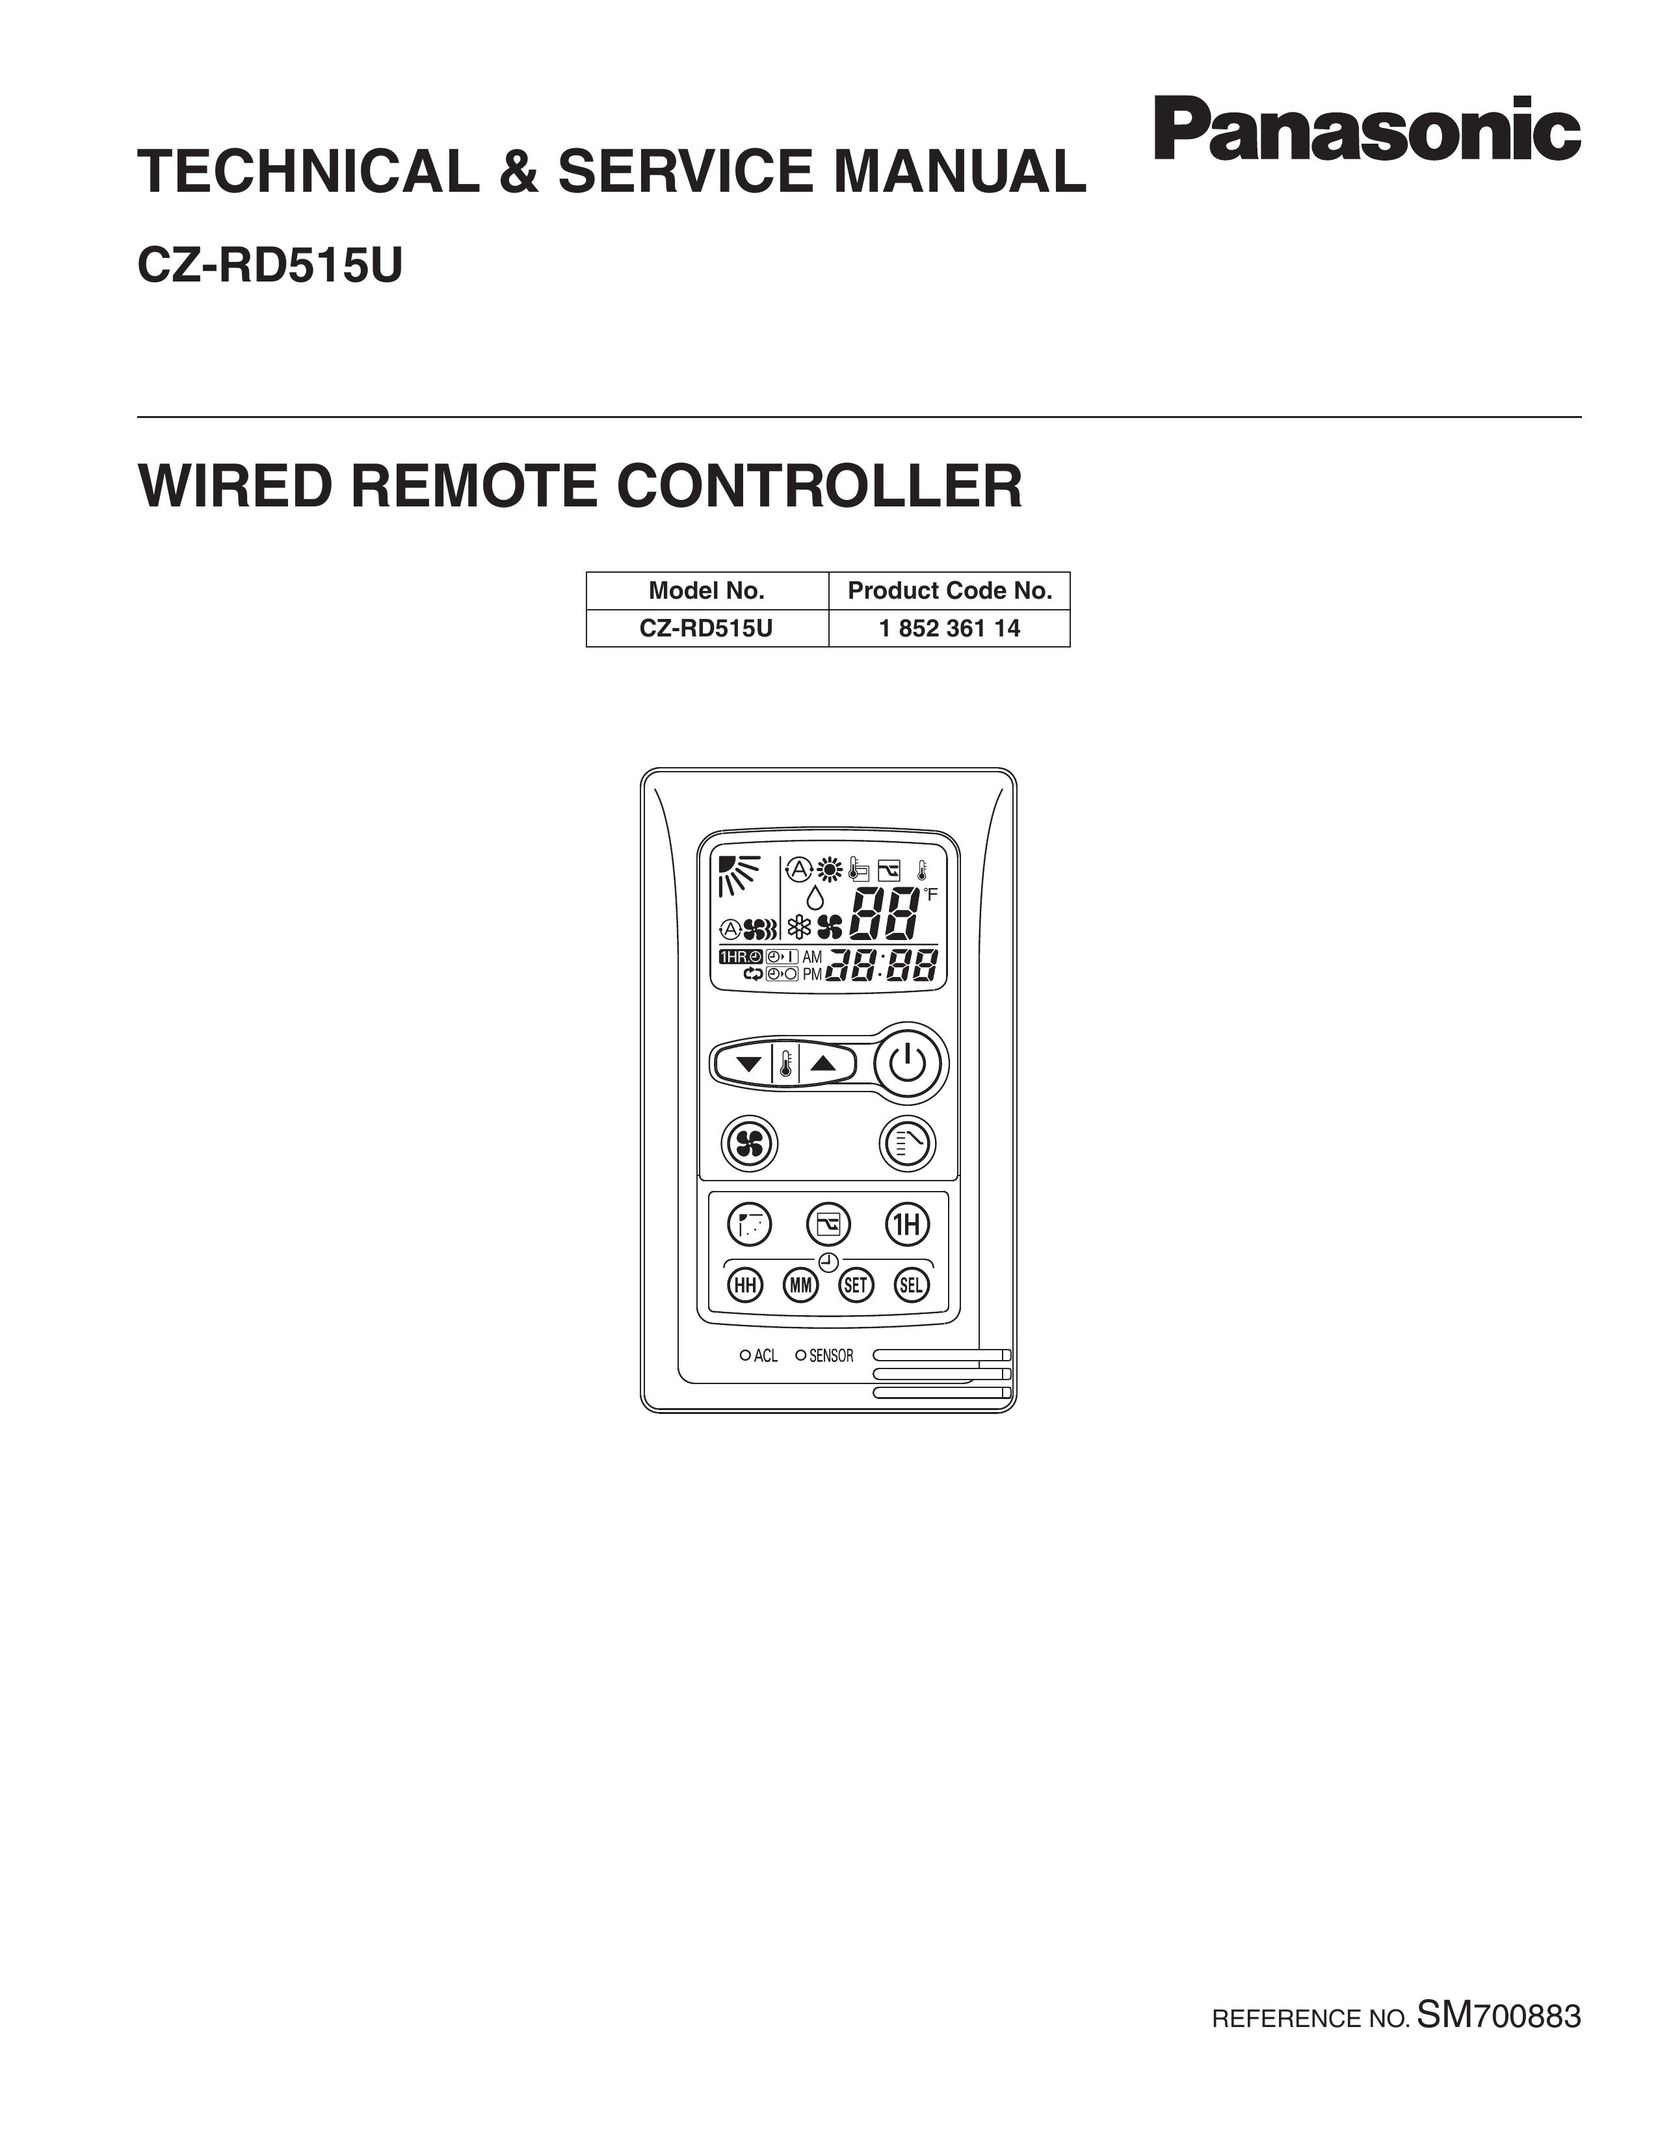 Panasonic CZ-RD515U Garage Door Opener User Manual